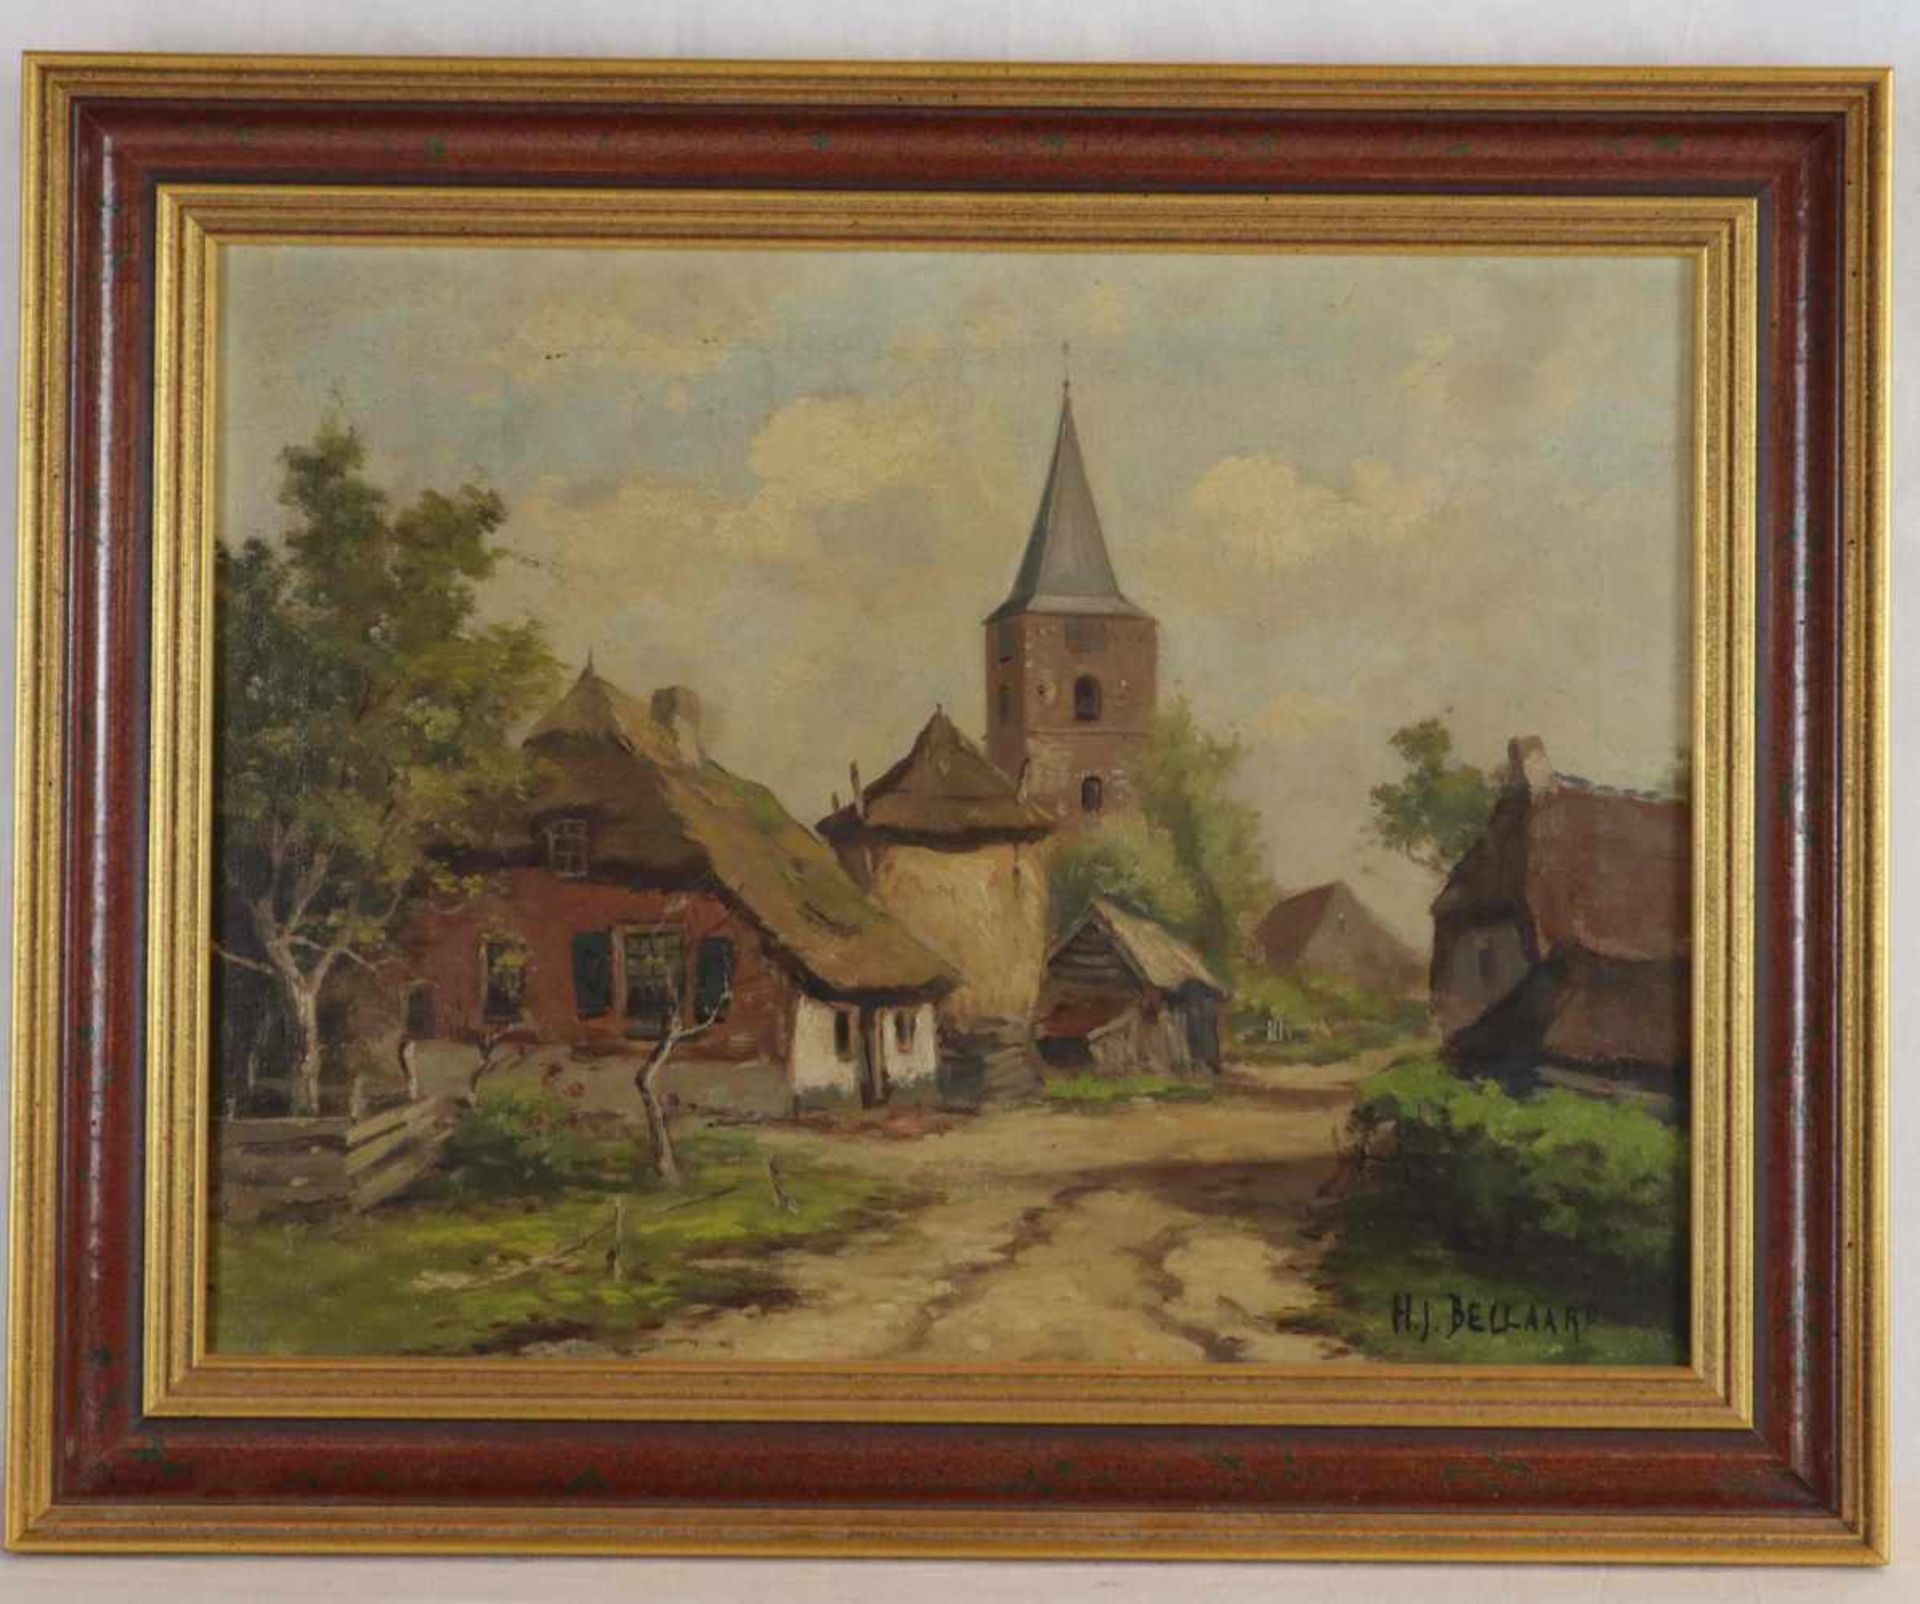 Bellaard, Henk (1896 Dordrecht - 1975 Gouda) - Dorfeingang mit reetgedeckten Häuschen und Kirchturm,